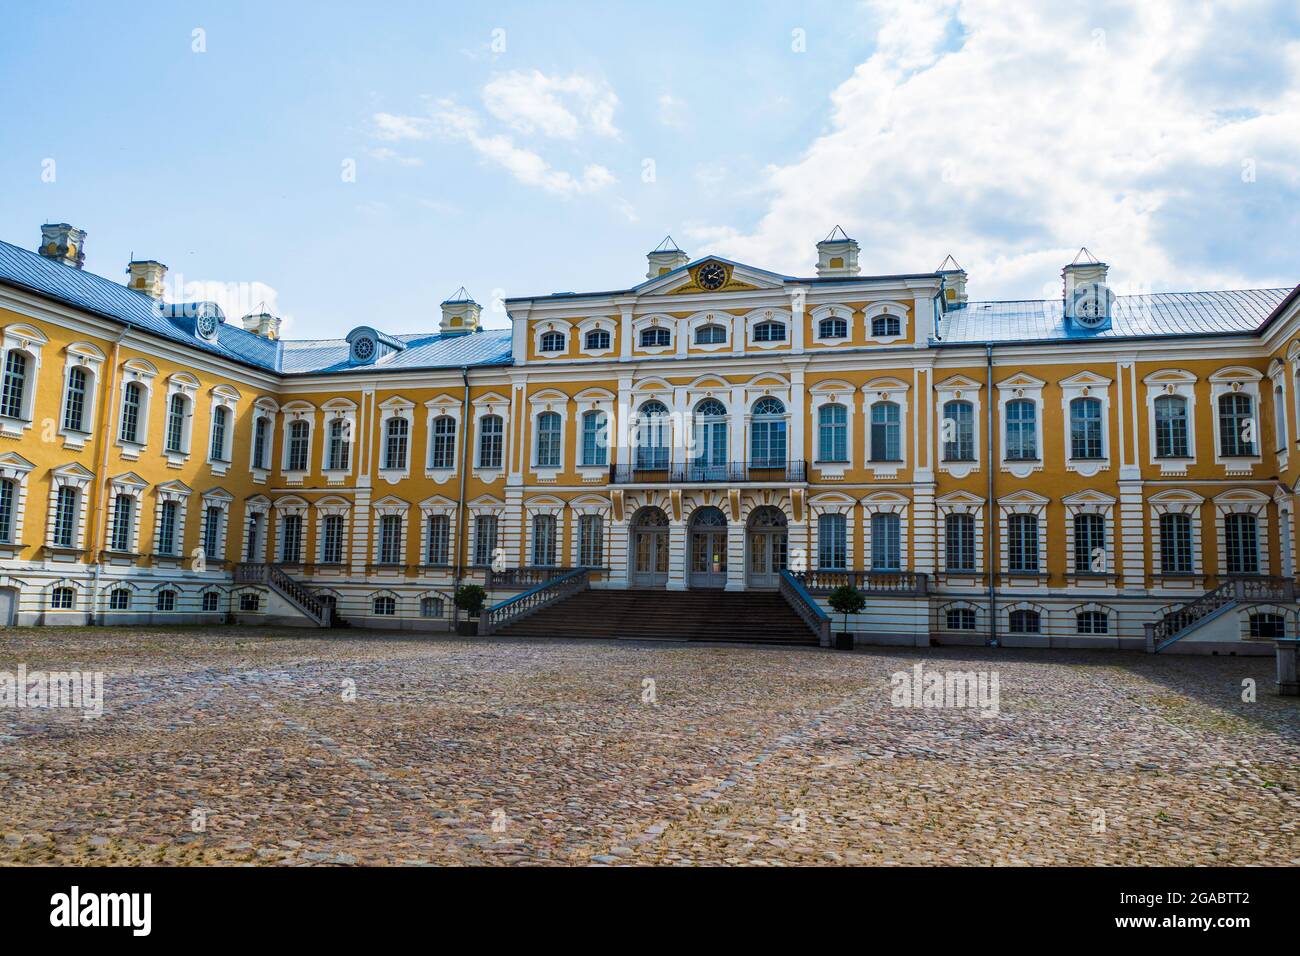 Palazzo Rundale - Palazzo maggiore Ensemble di architettura barocca. Lettonia Foto Stock